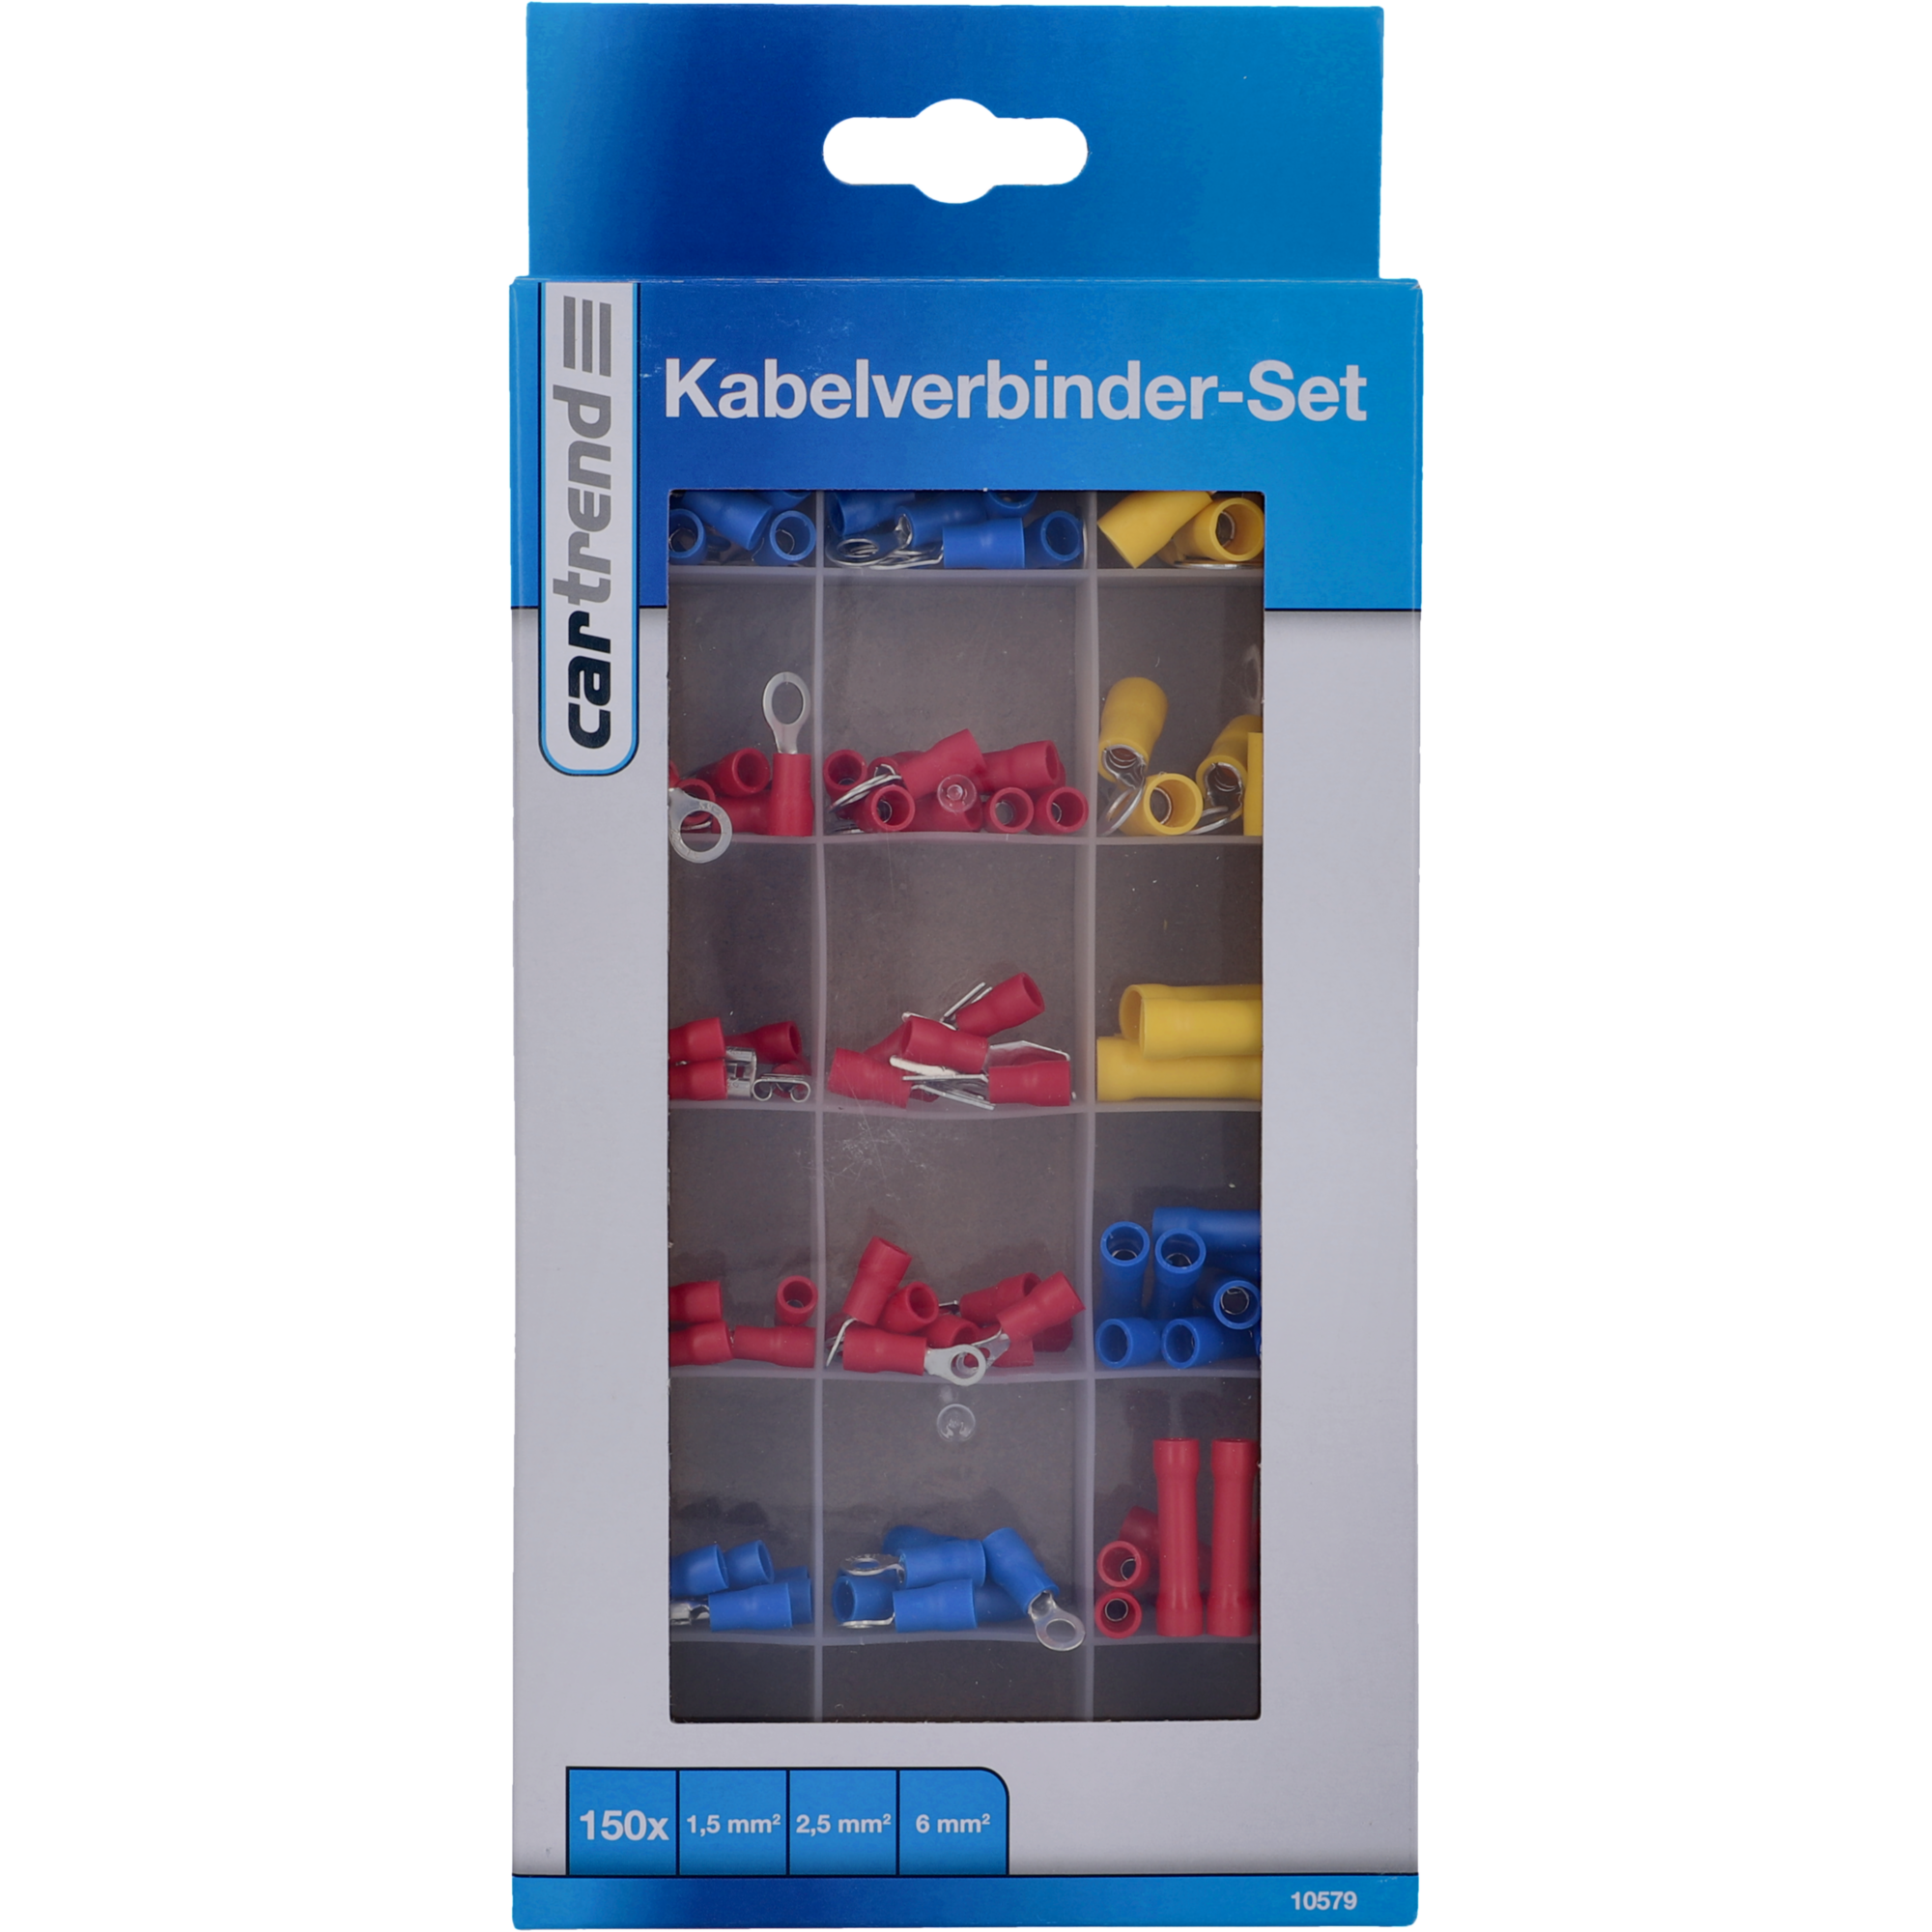 Kabelverbinder-Set 150-teilig + product picture